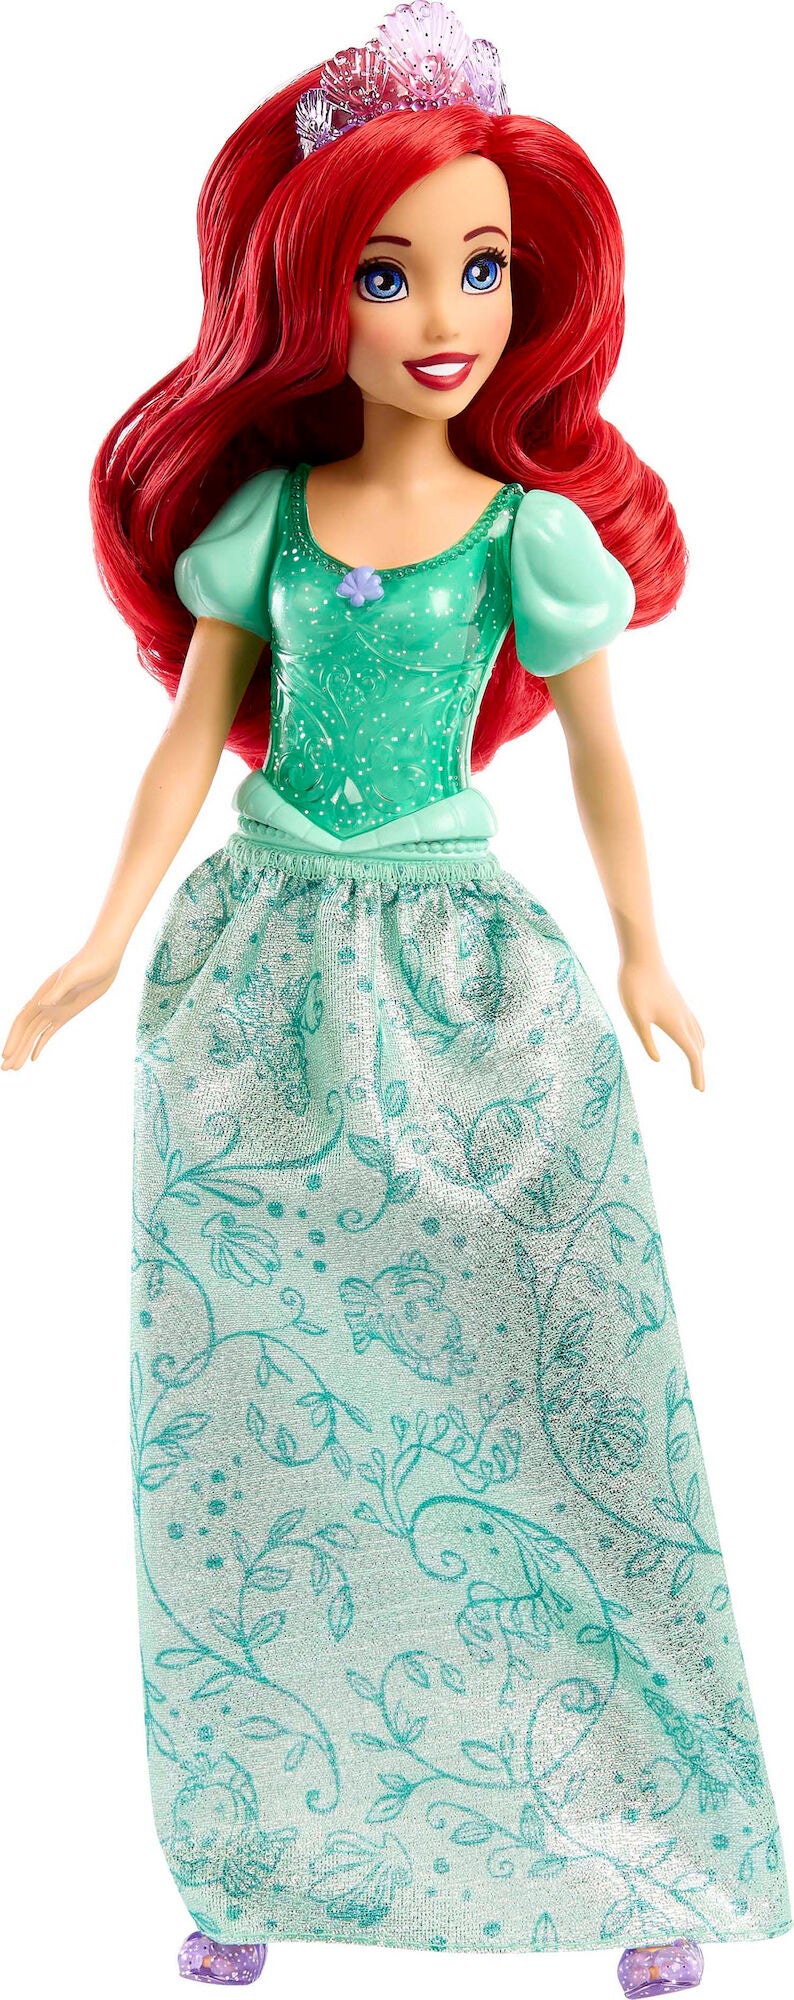 Disney Prinzessinnen Arielle Puppe 28cm von Disney Prinzessin